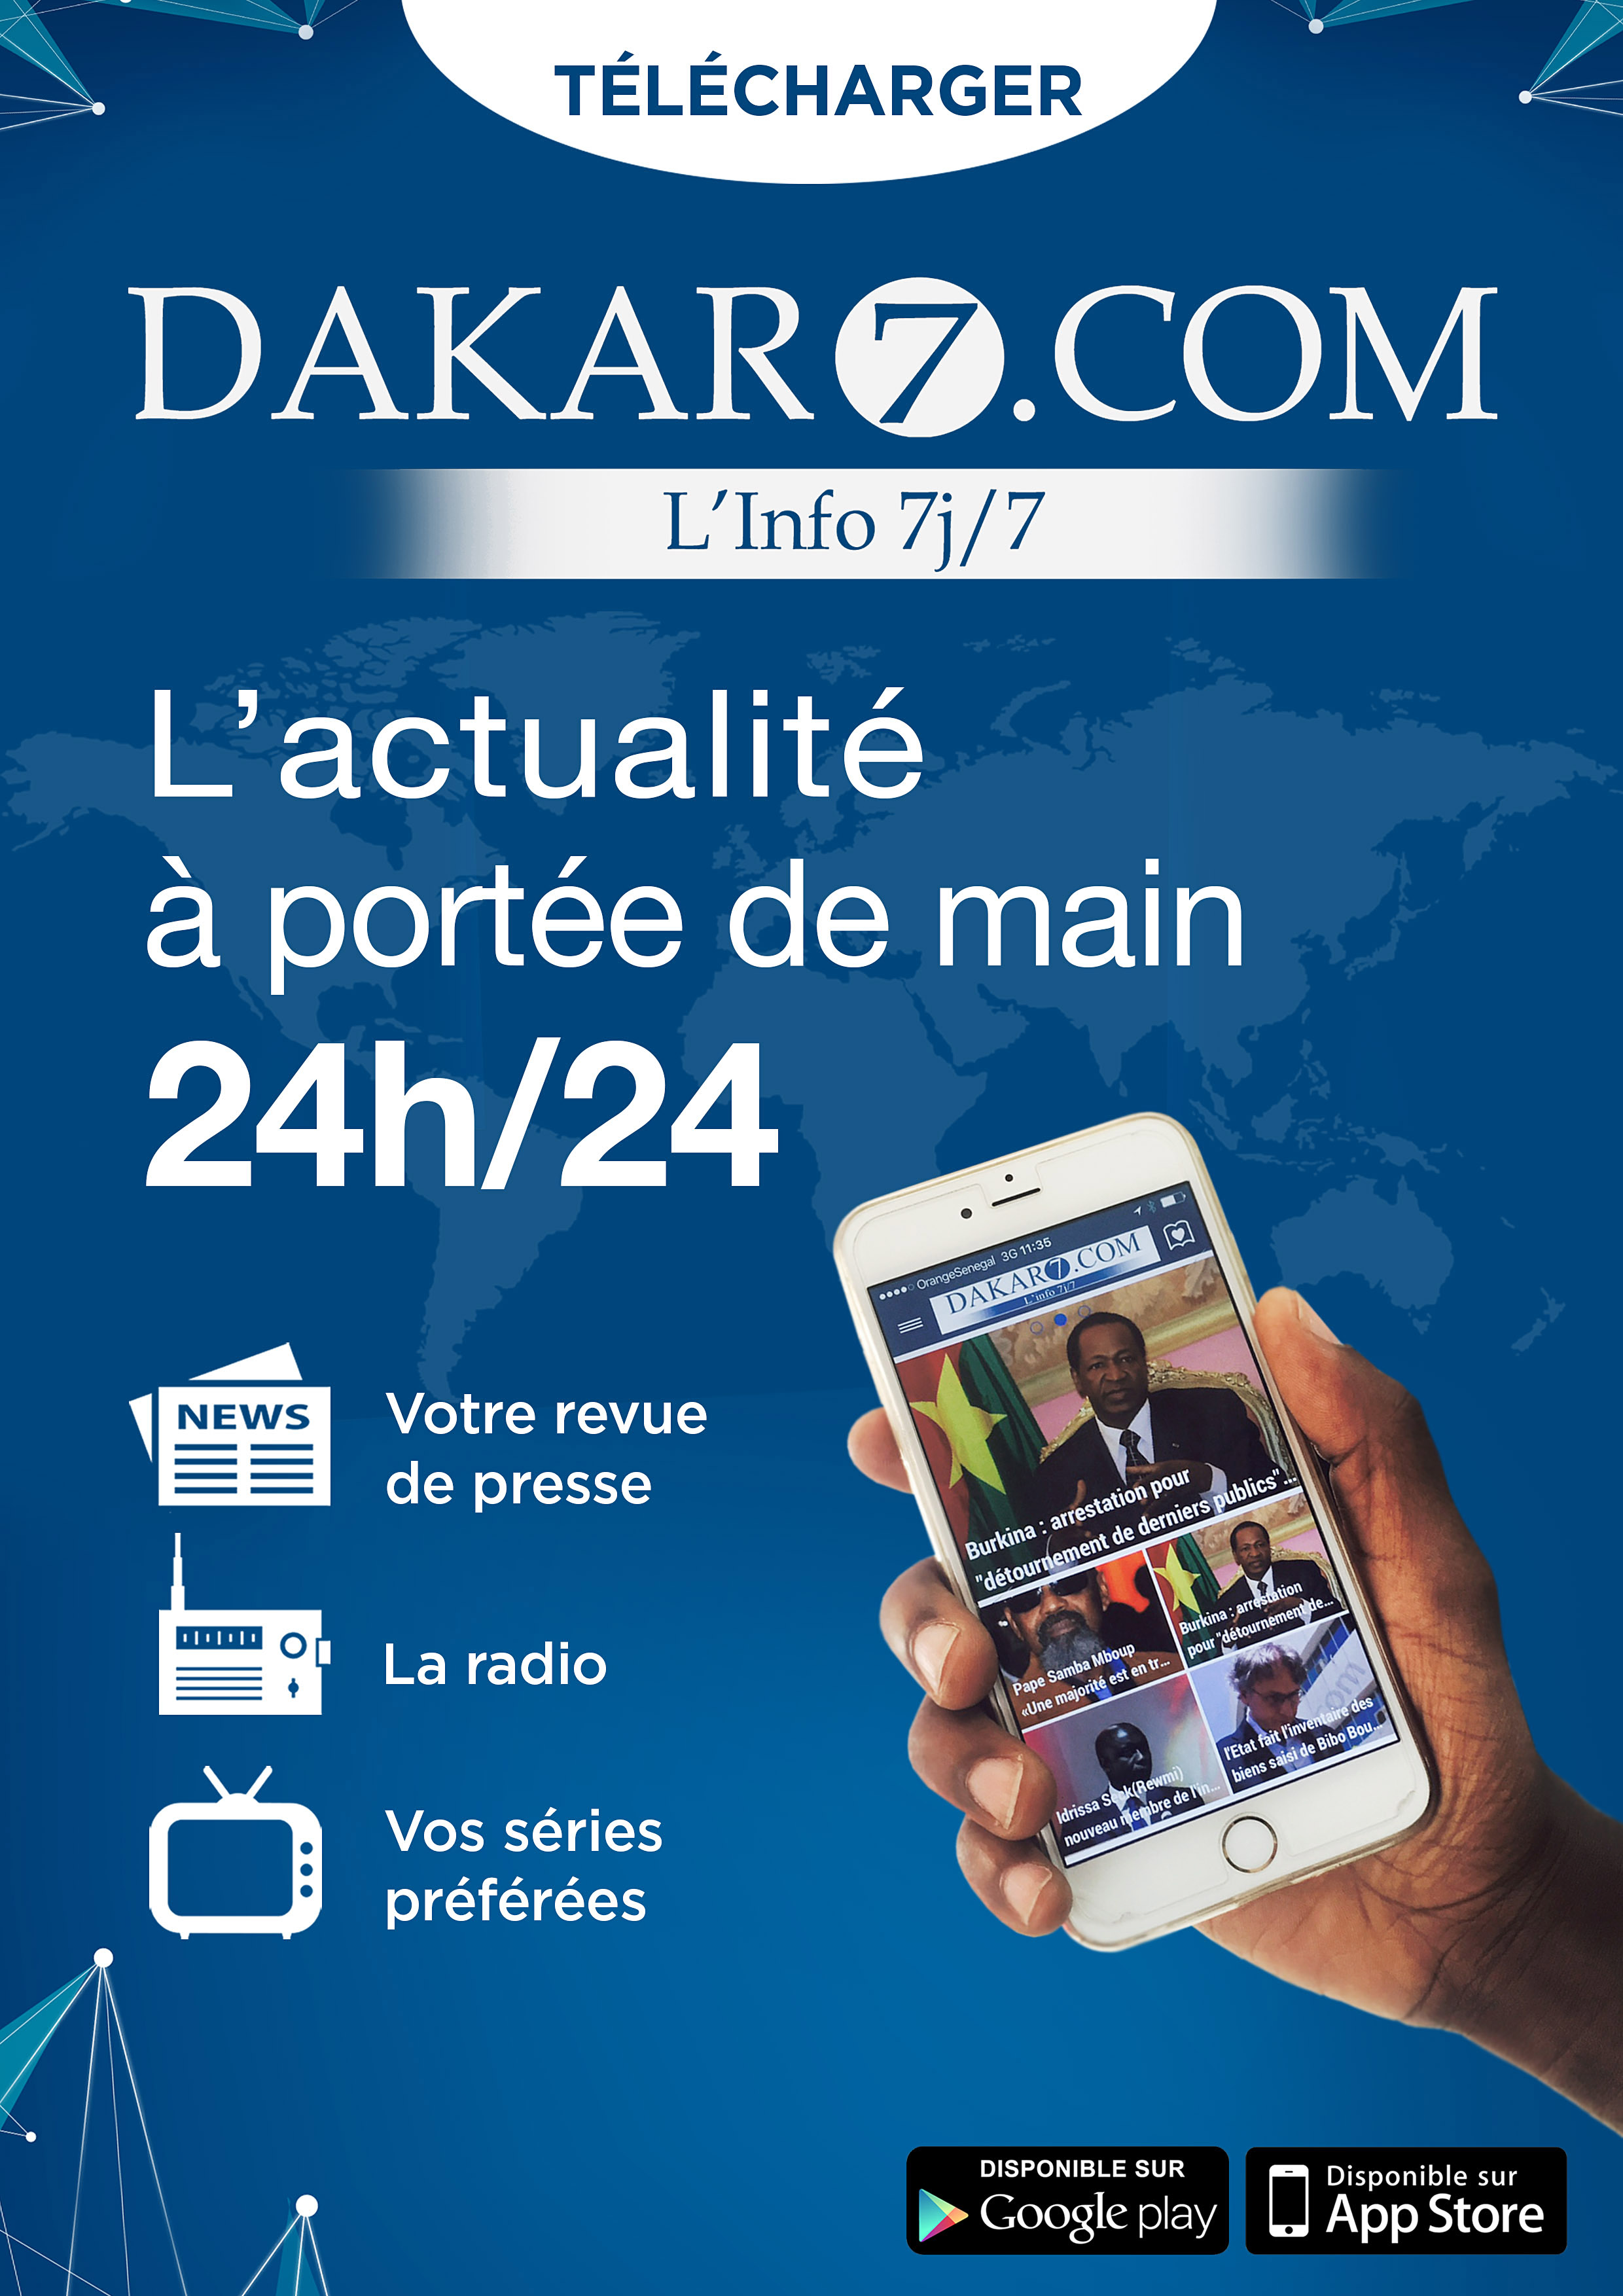 Dakar7.com innove encore avec une Application de dernière génération ( Android et IOS)